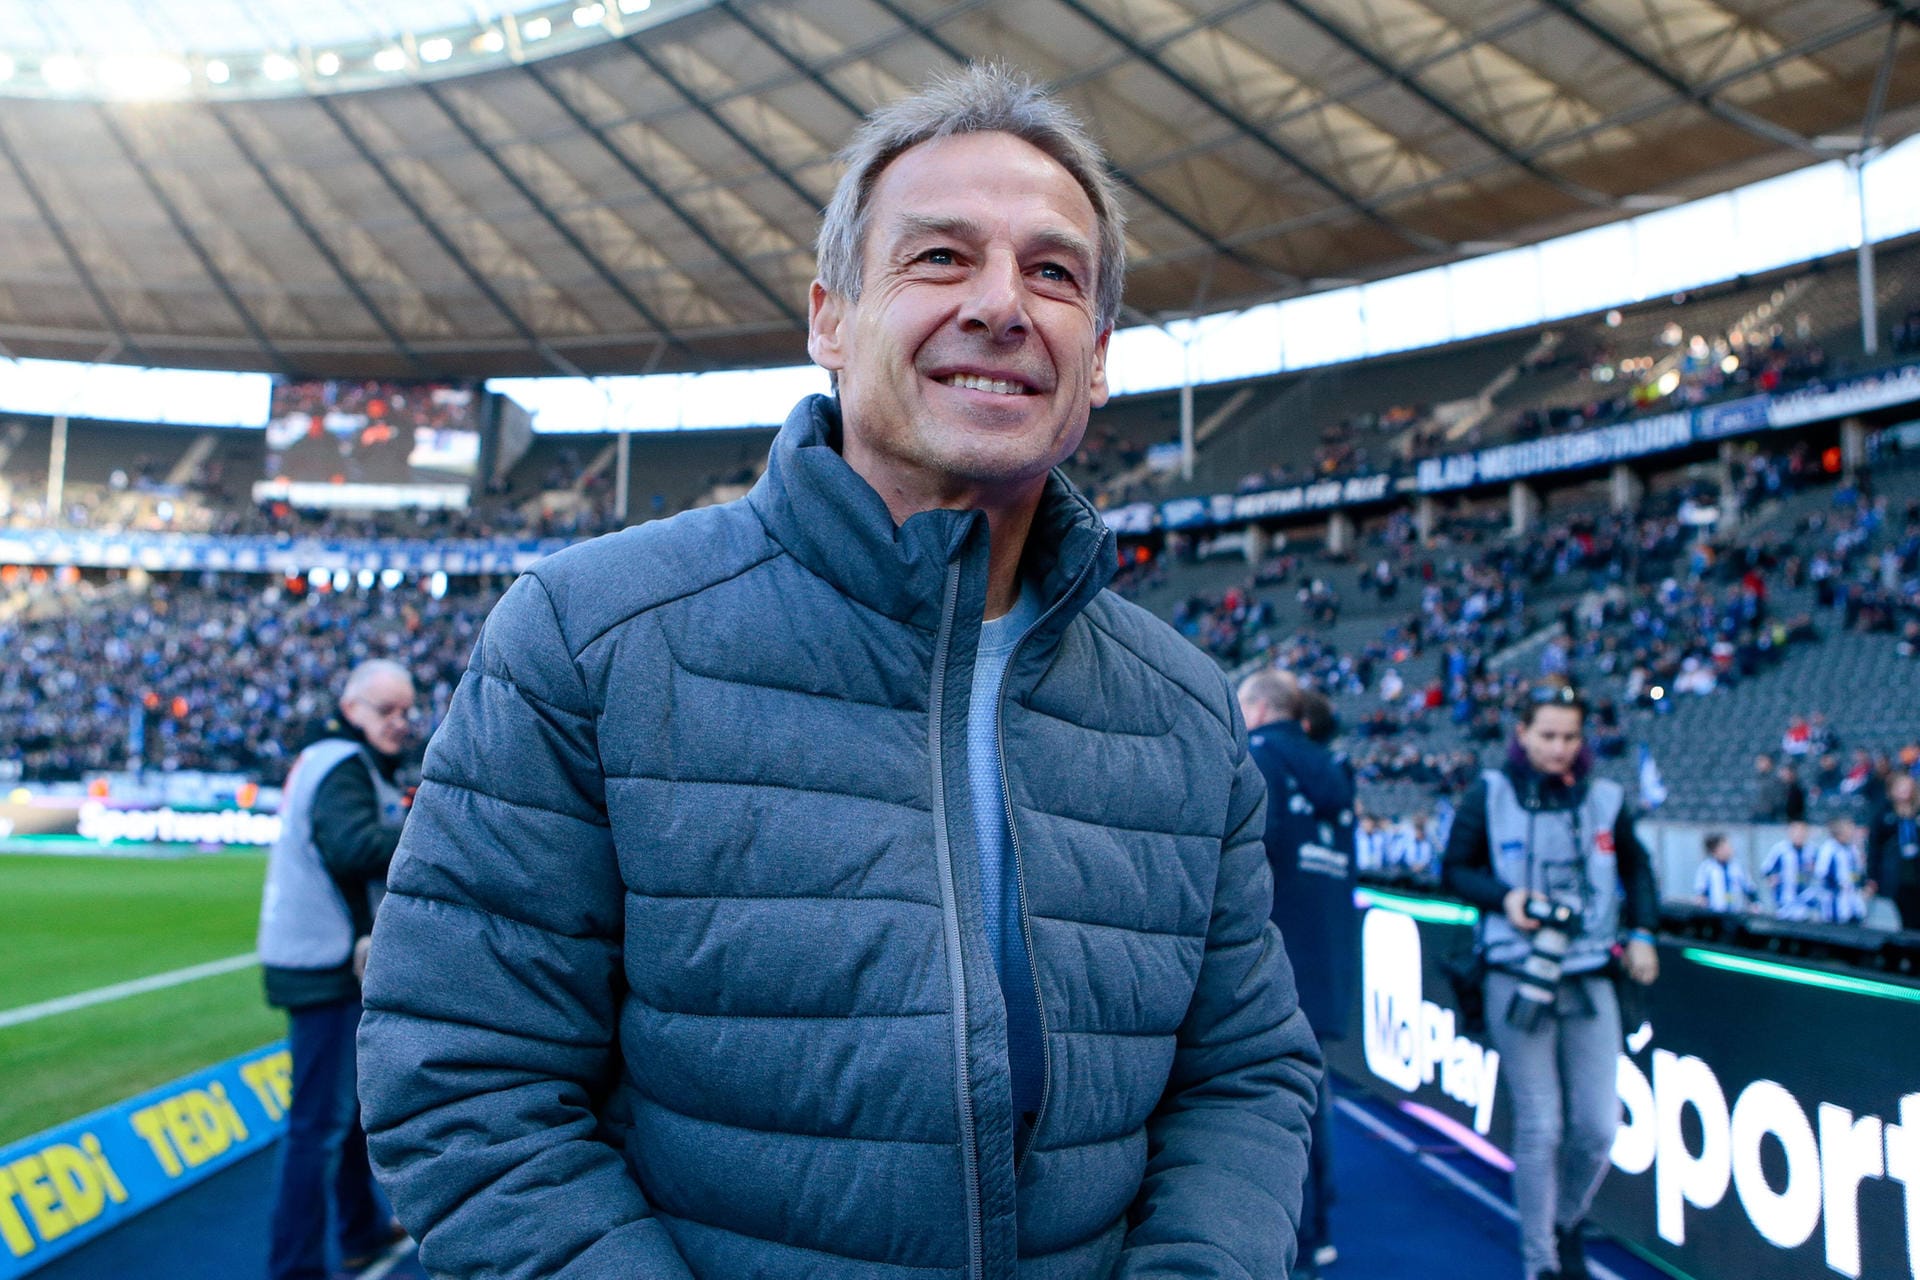 Jürgen Klinsmann: Wo wir schon beim früheren Nationaltrainer wären. Nach seiner erfolgreichen Zeit beim DFB-Team endete die Klinsmann-Ära 2006 mit dem 3. Platz beim "Sommermärchen". Danach zog es den gebürtigen Göppinger kurz zum FC Bayern und dann in die USA. Als Trainer von Hertha BSC machte "Klinsi" genau 10 Spiele, nahm seit Februar 2020 nicht wieder auf einer Trainerbank platz.